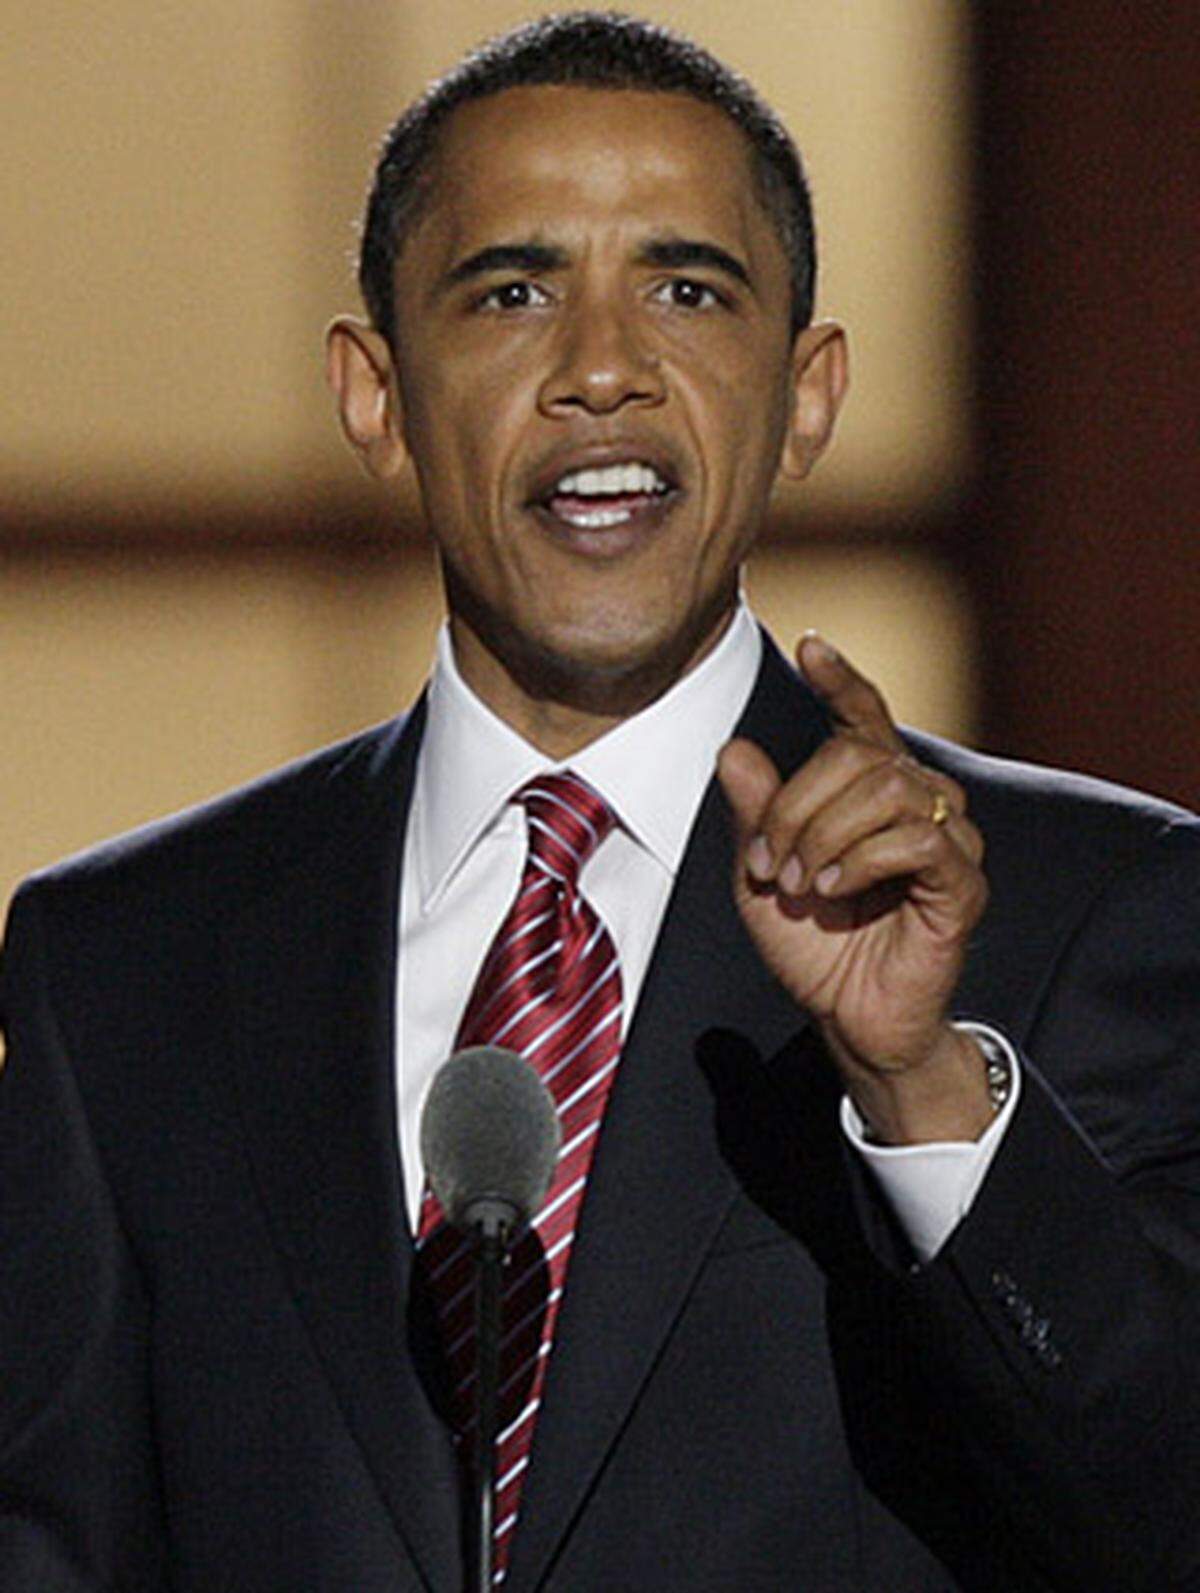 Bereits Ende 2002 kritisiert Obama den bevorstehenden „dummen Krieg“ gegen den Irak. 2004 überzeugt er bei der Democratic National Convention in Boston erstmals mit seinem Redetalent: „Es gibt kein liberales und kein konservatives, kein schwarzes und weißes Amerika. Es gibt nur die Vereinigten Staaten von Amerika“. Im Jänner 2005 zieht er in den US-Senat ein.